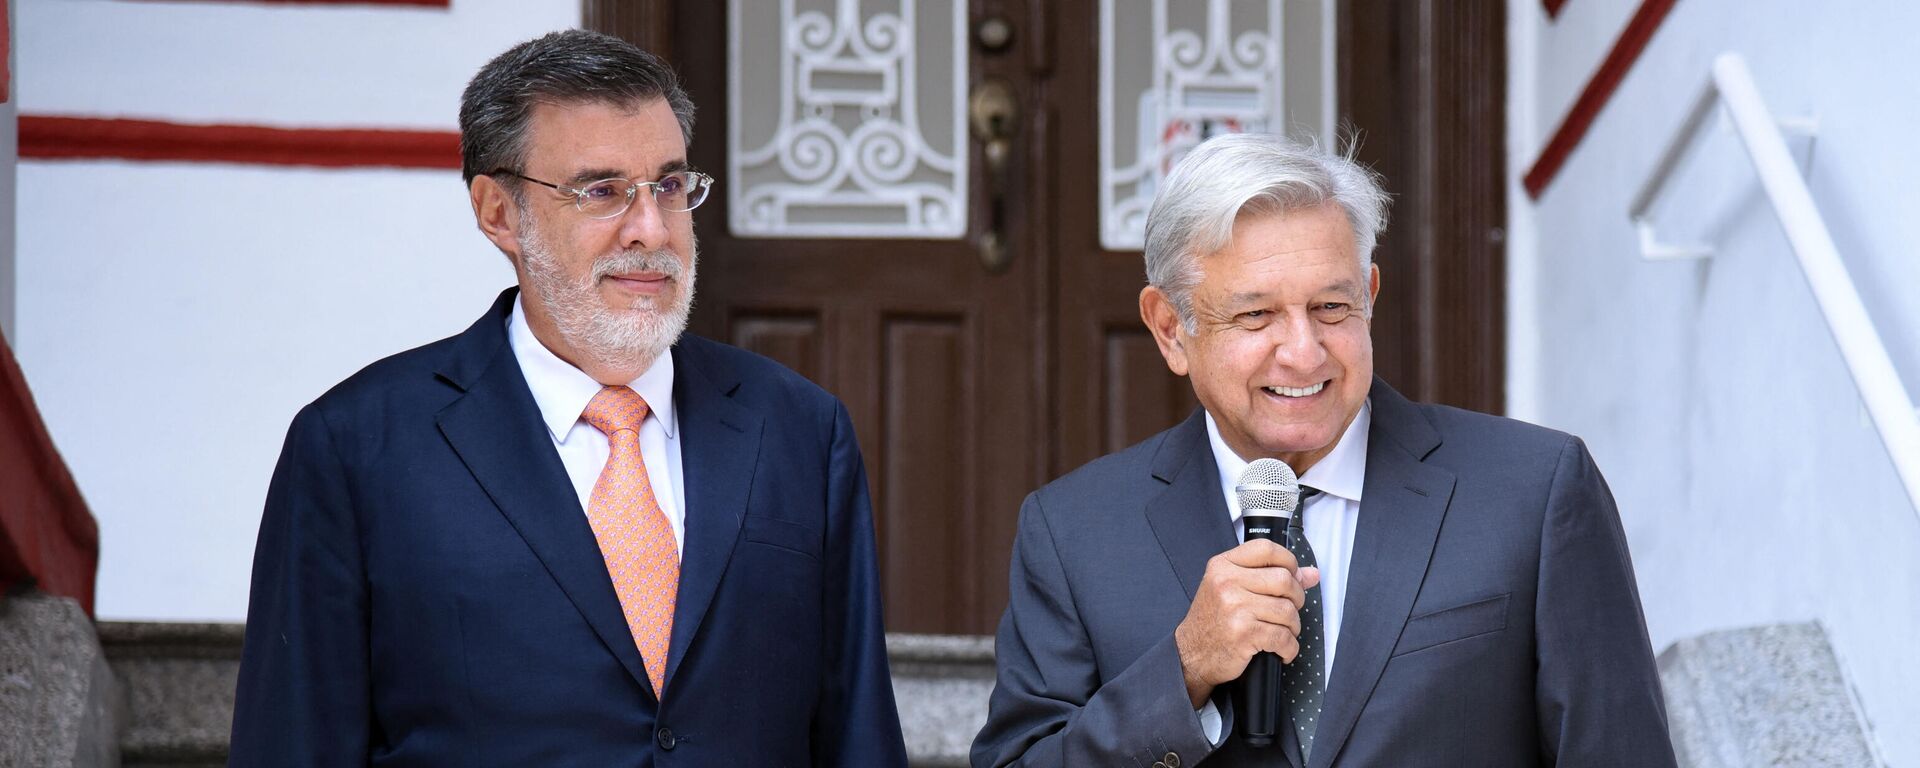 El presidente de México, Andrés Manuel López Obrador, (derecha) y el Consejero Jurídico de la Presidencia de México, Julio Scherer Ibarra - Sputnik Mundo, 1920, 01.09.2021